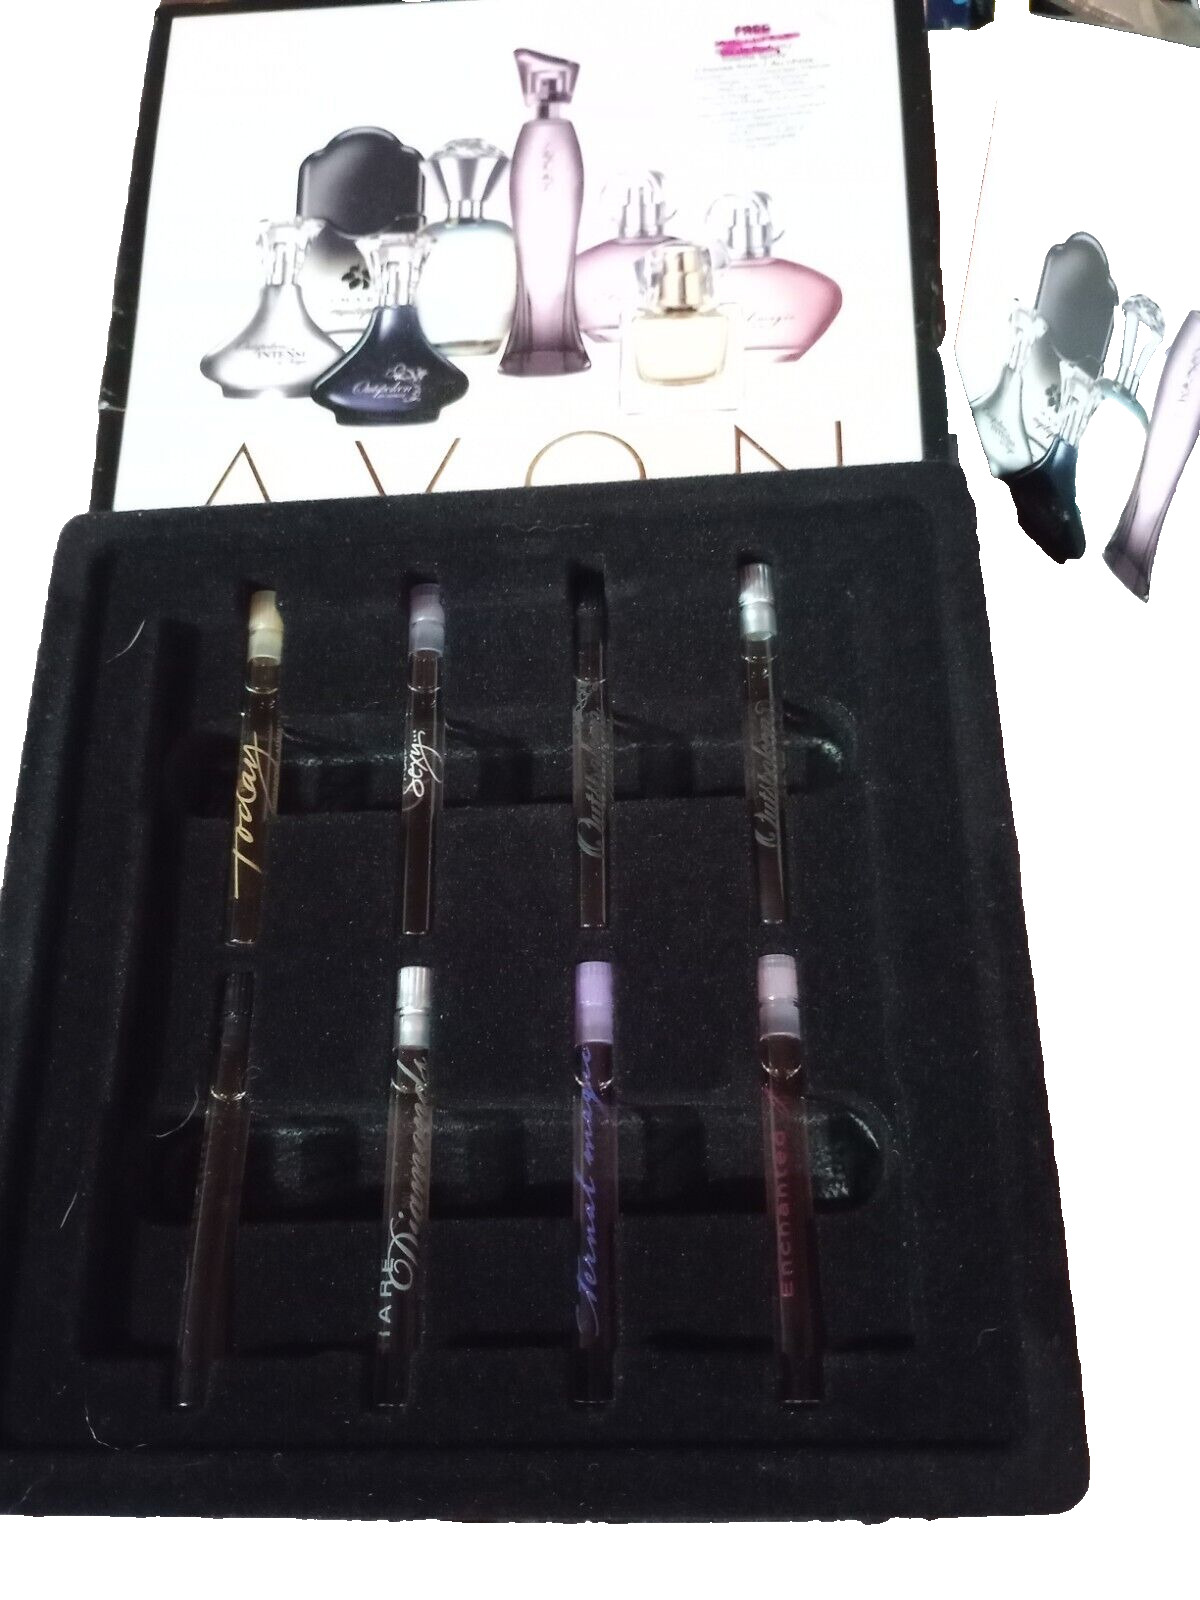 Avon 2012 Fragrance Favorites Sampler for Her - 8 Sample Spray Vials & Booklet